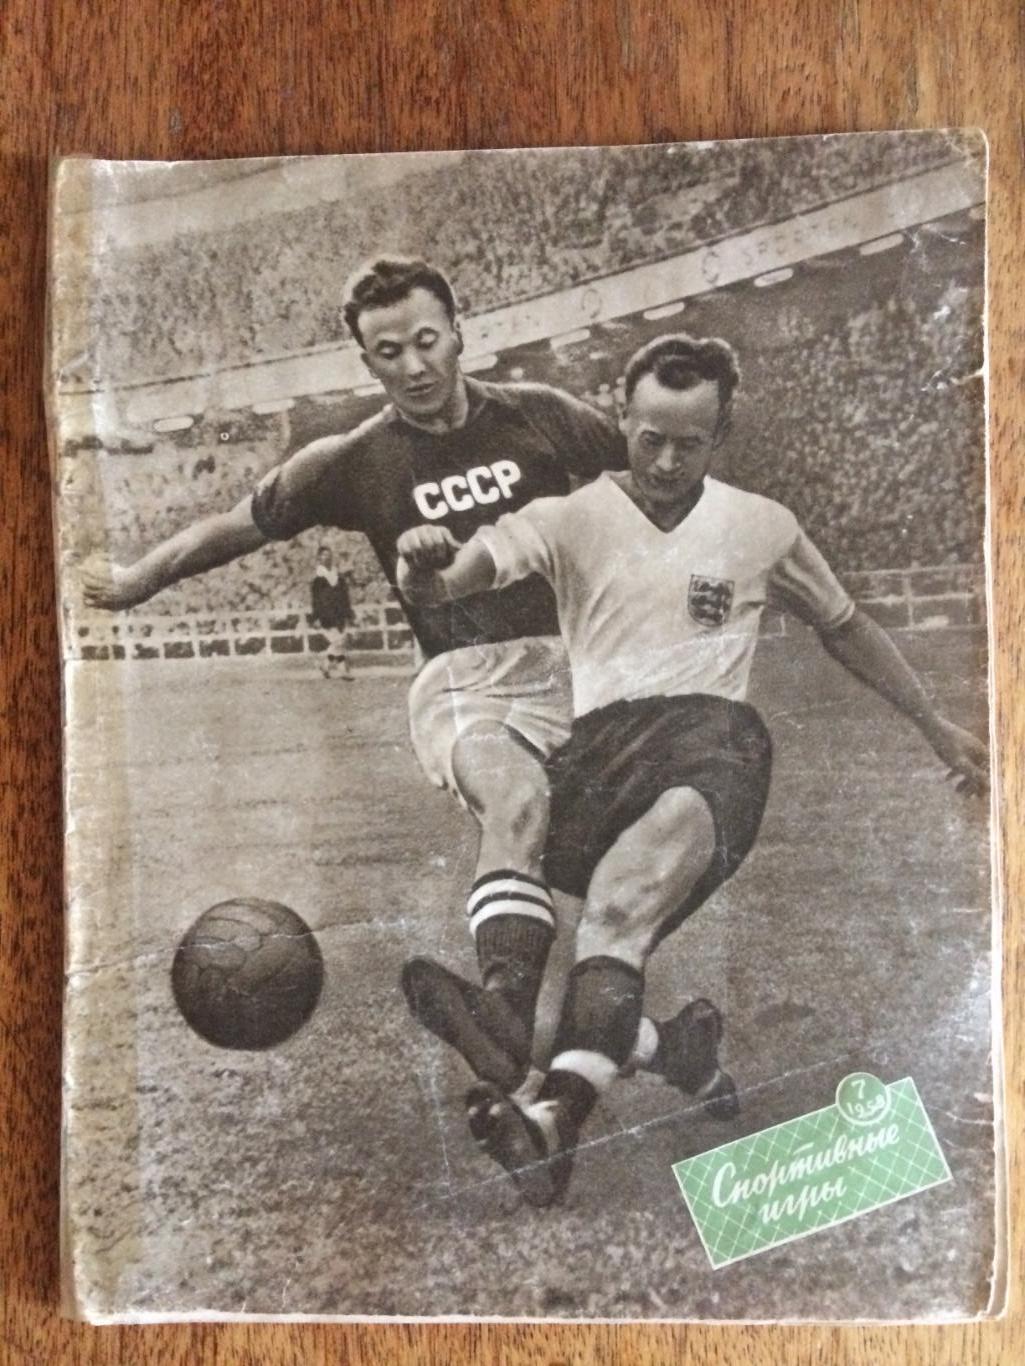 Журнал Спортивные игры №7 1958 Чемпионат мира Швеция